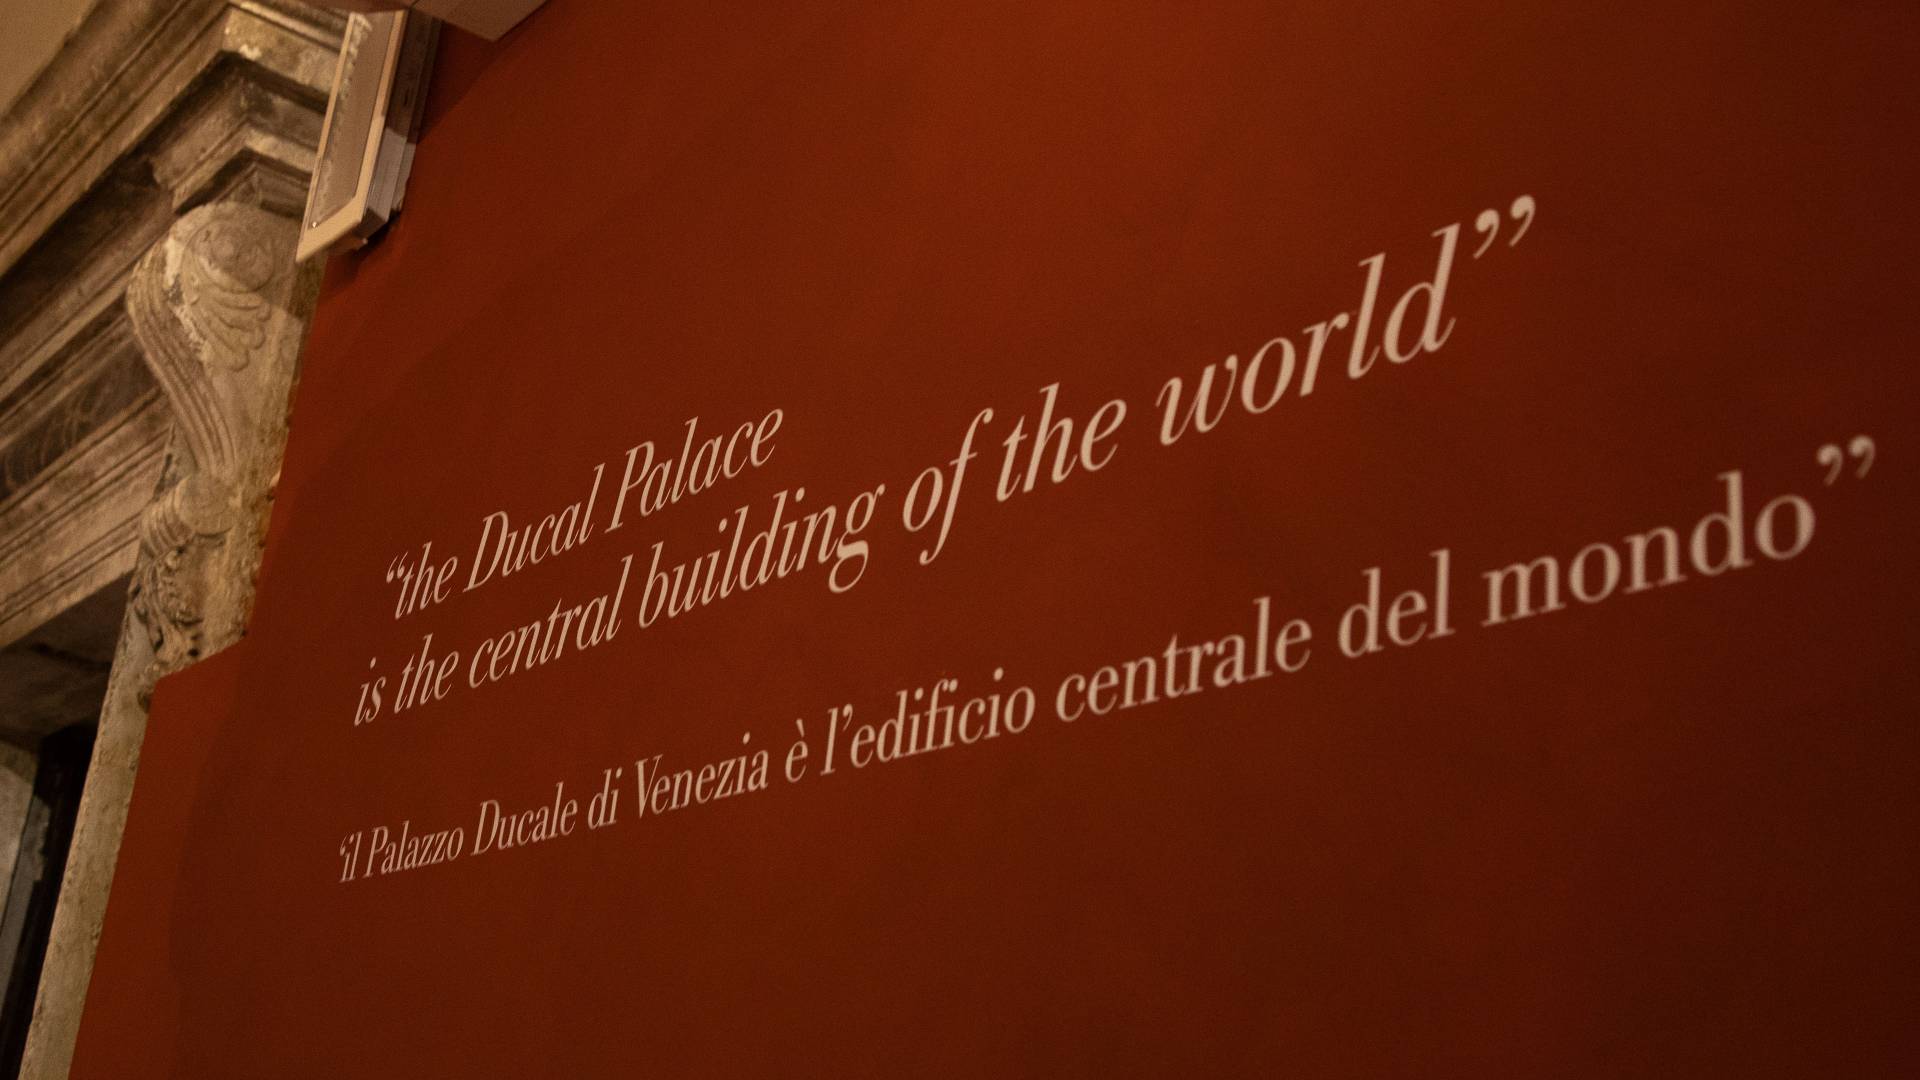 “the Ducal Palace is the central building of the world; il Palazzo Ducale di Venezia è l’edificio centrale del mondo”